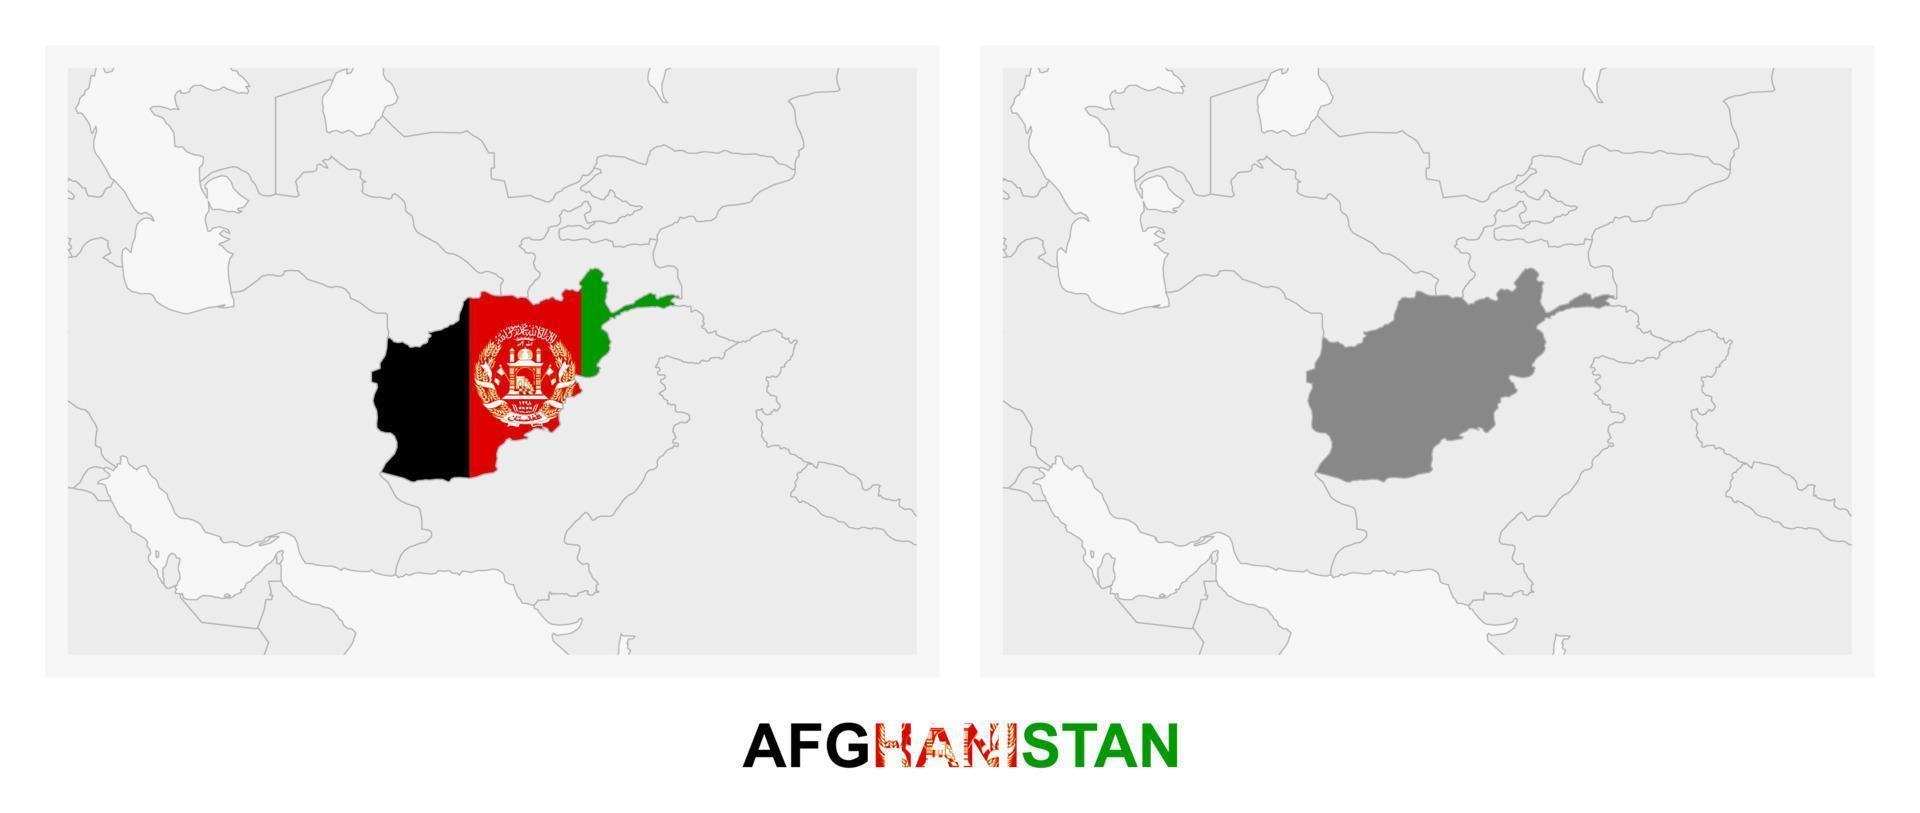 dos versiones del mapa de afganistán, con la bandera de afganistán y resaltada en gris oscuro. vector